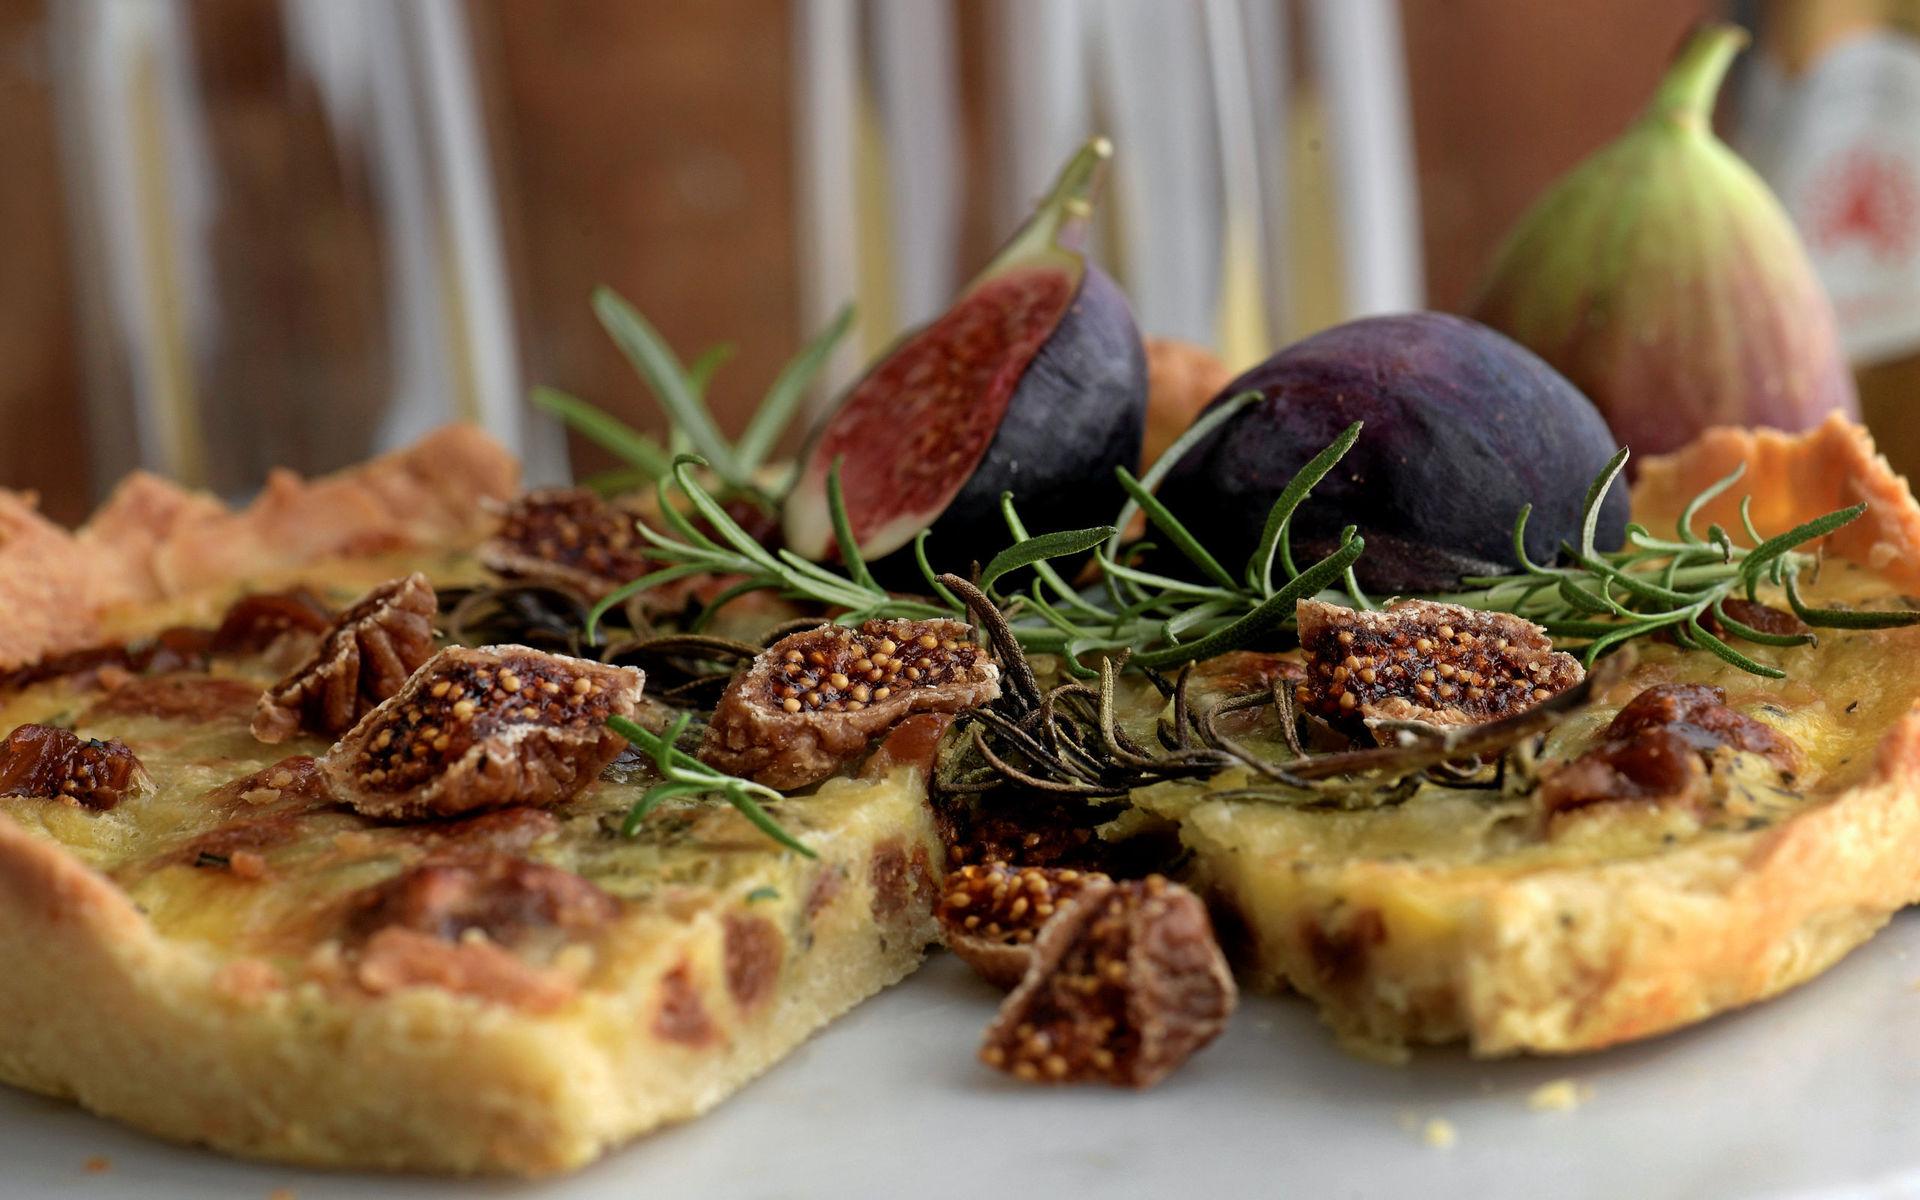 Grekiskinspirerad paj med smak av fikon, grevé och rosmarin.